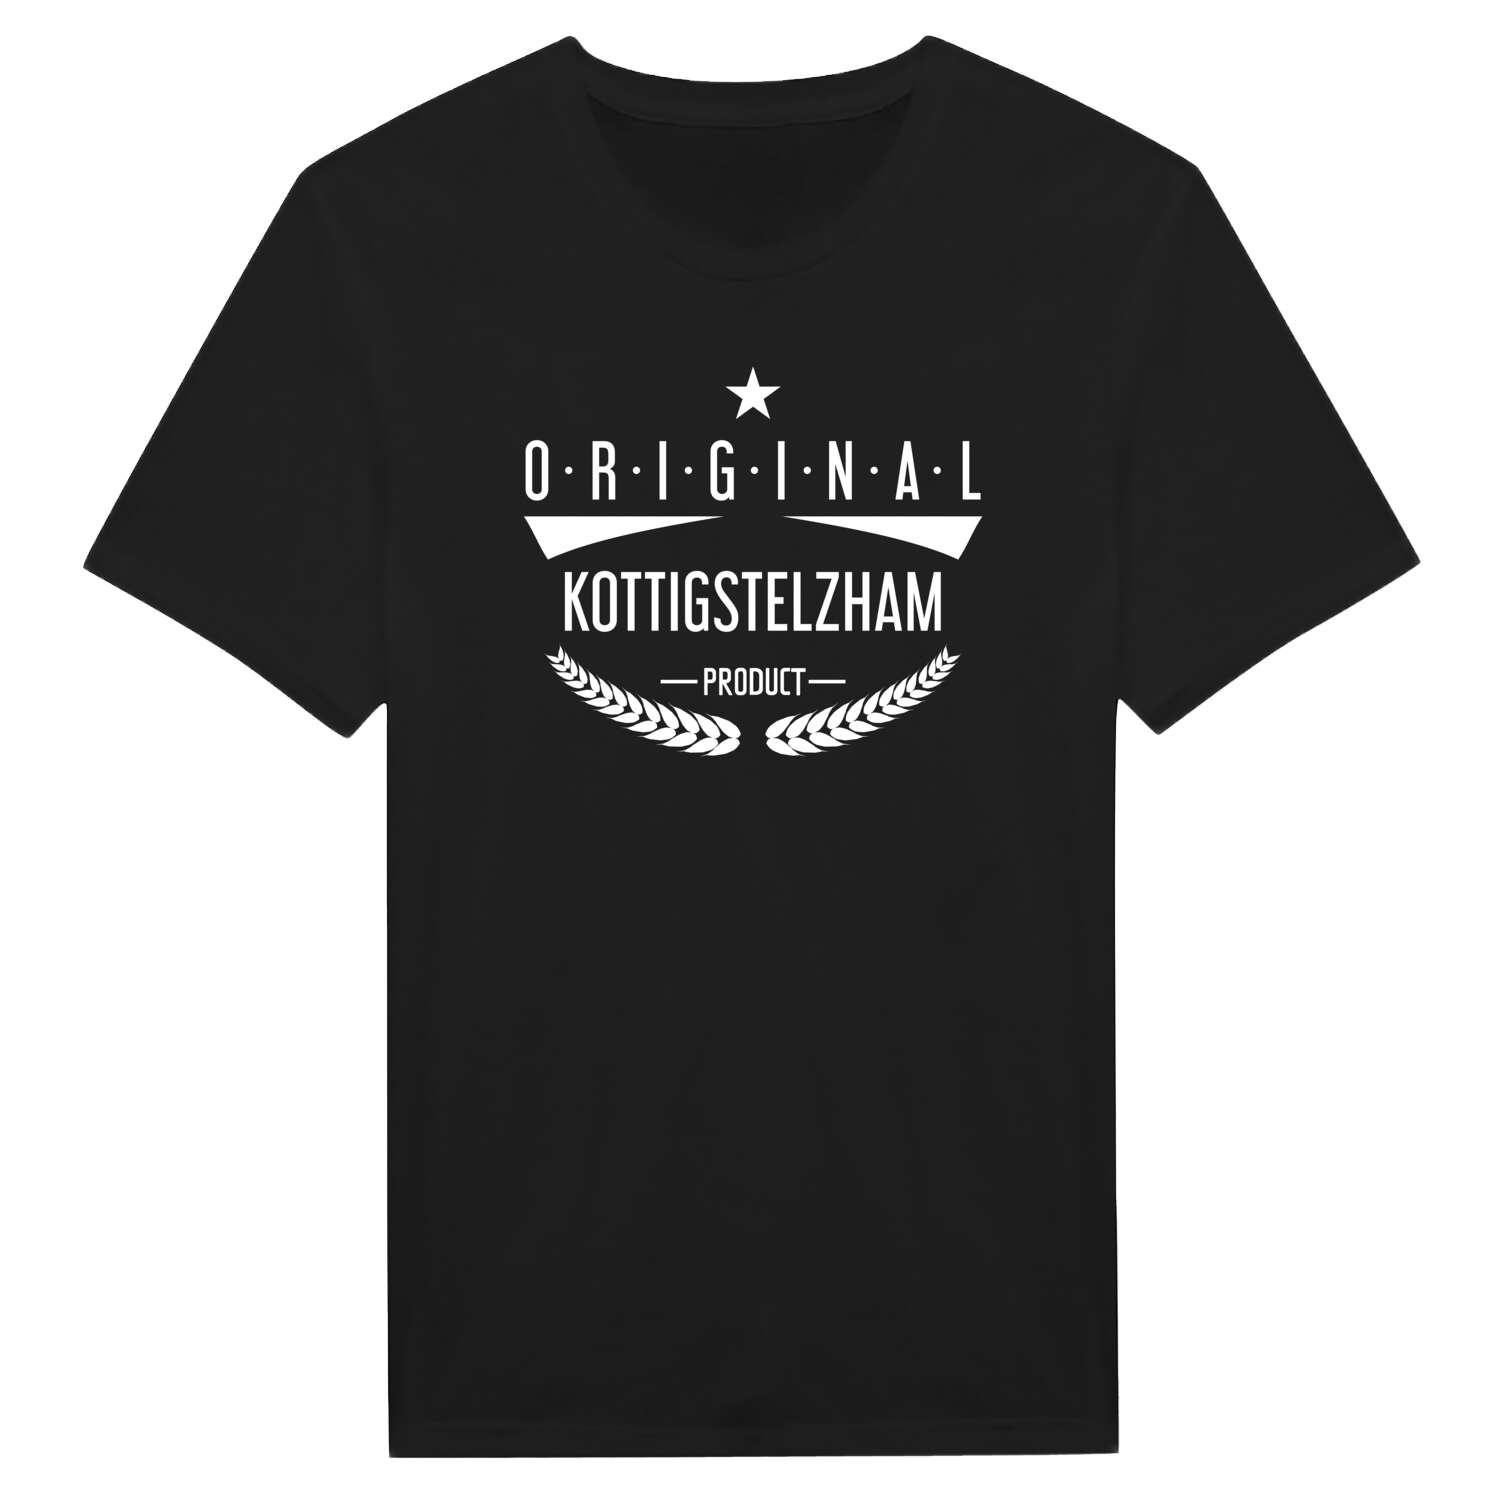 Kottigstelzham T-Shirt »Original Product«